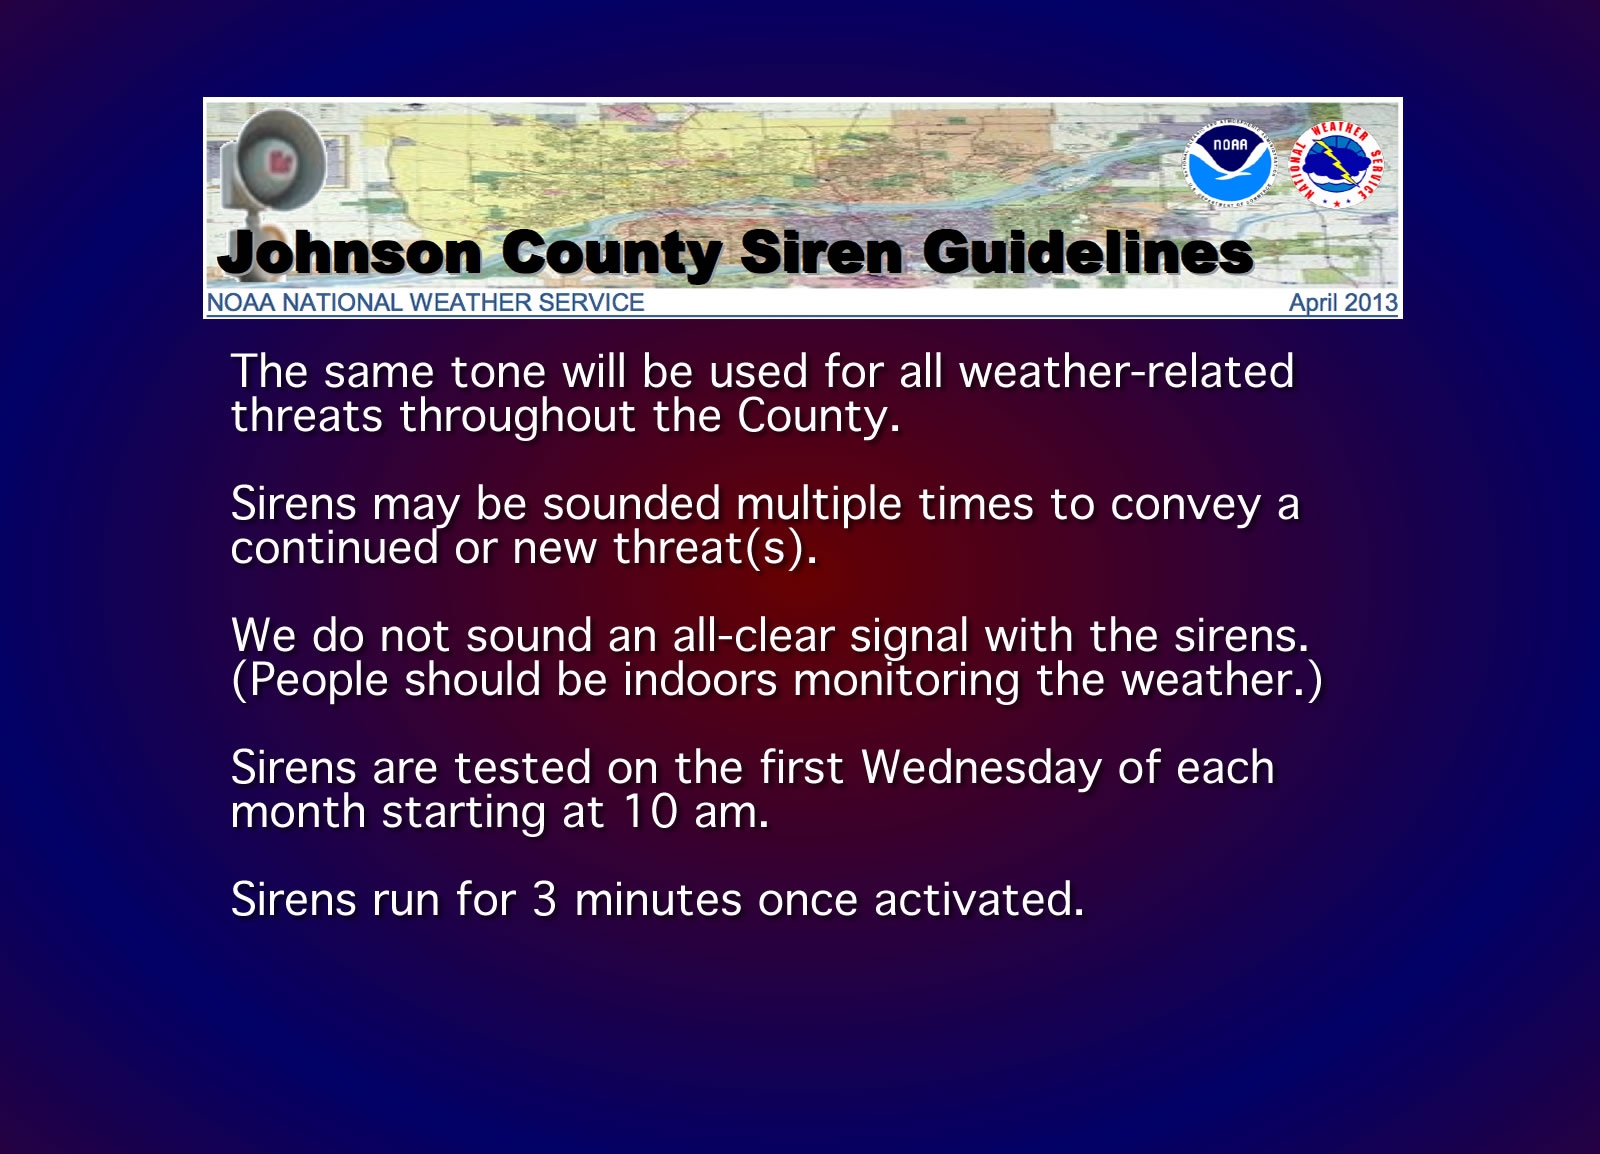 siren guidelines2